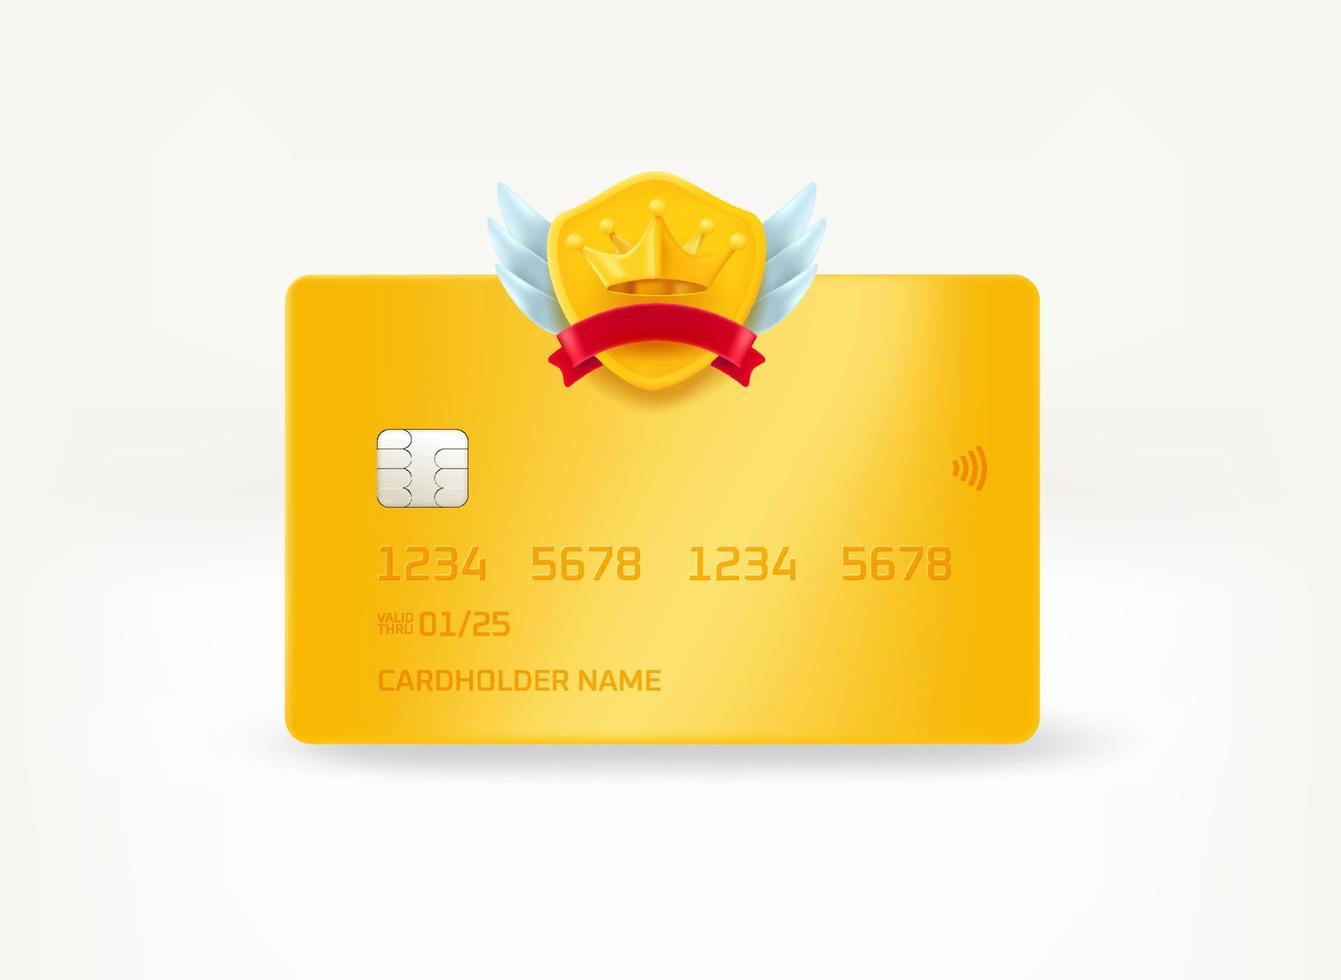 cartão bancário premium de plástico com rótulo de coroa. ilustração vetorial 3D vetor